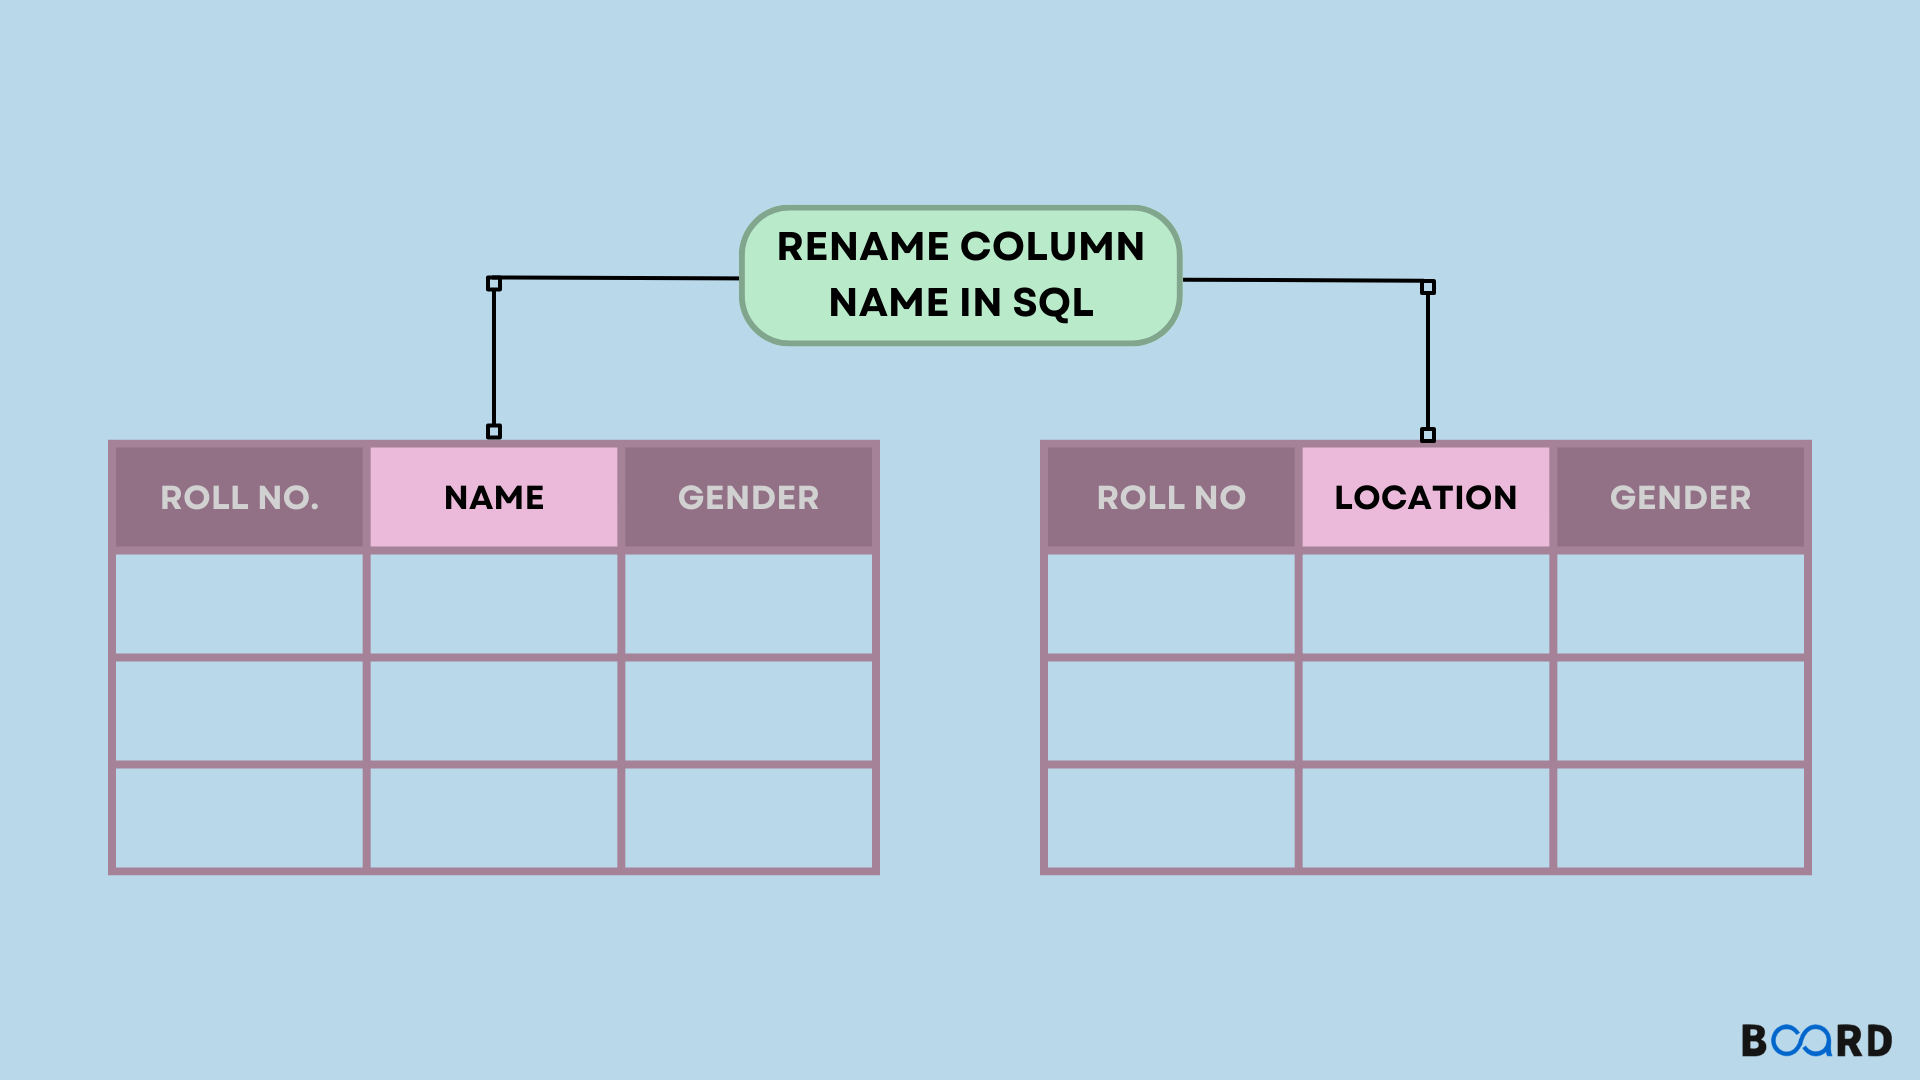 Rename column name in SQL